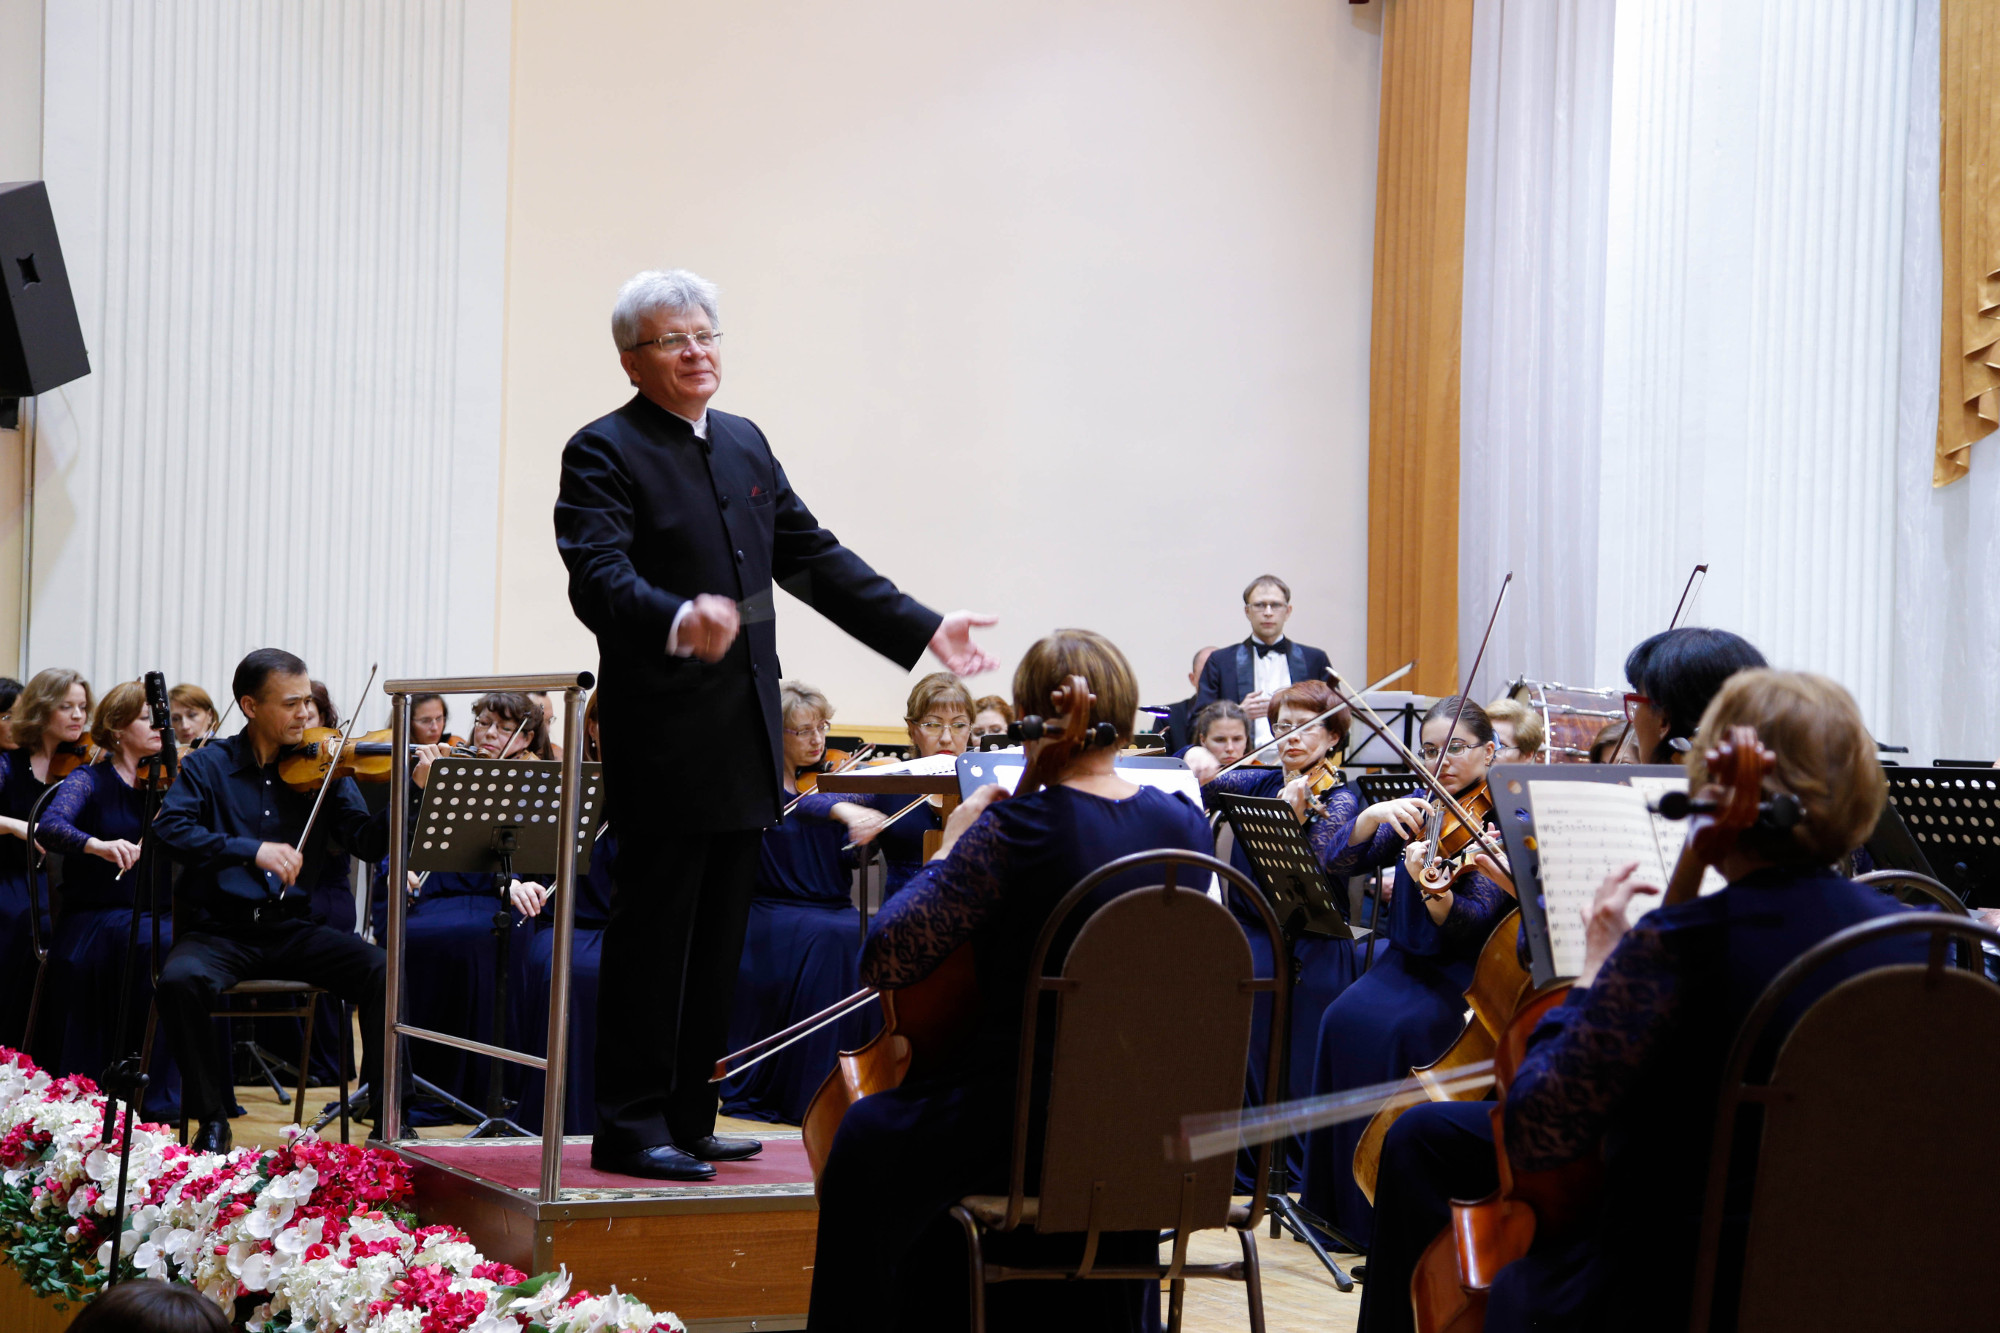 Закрытие XXXIII концертного сезона симфонического оркестра 28 мая 2016 года